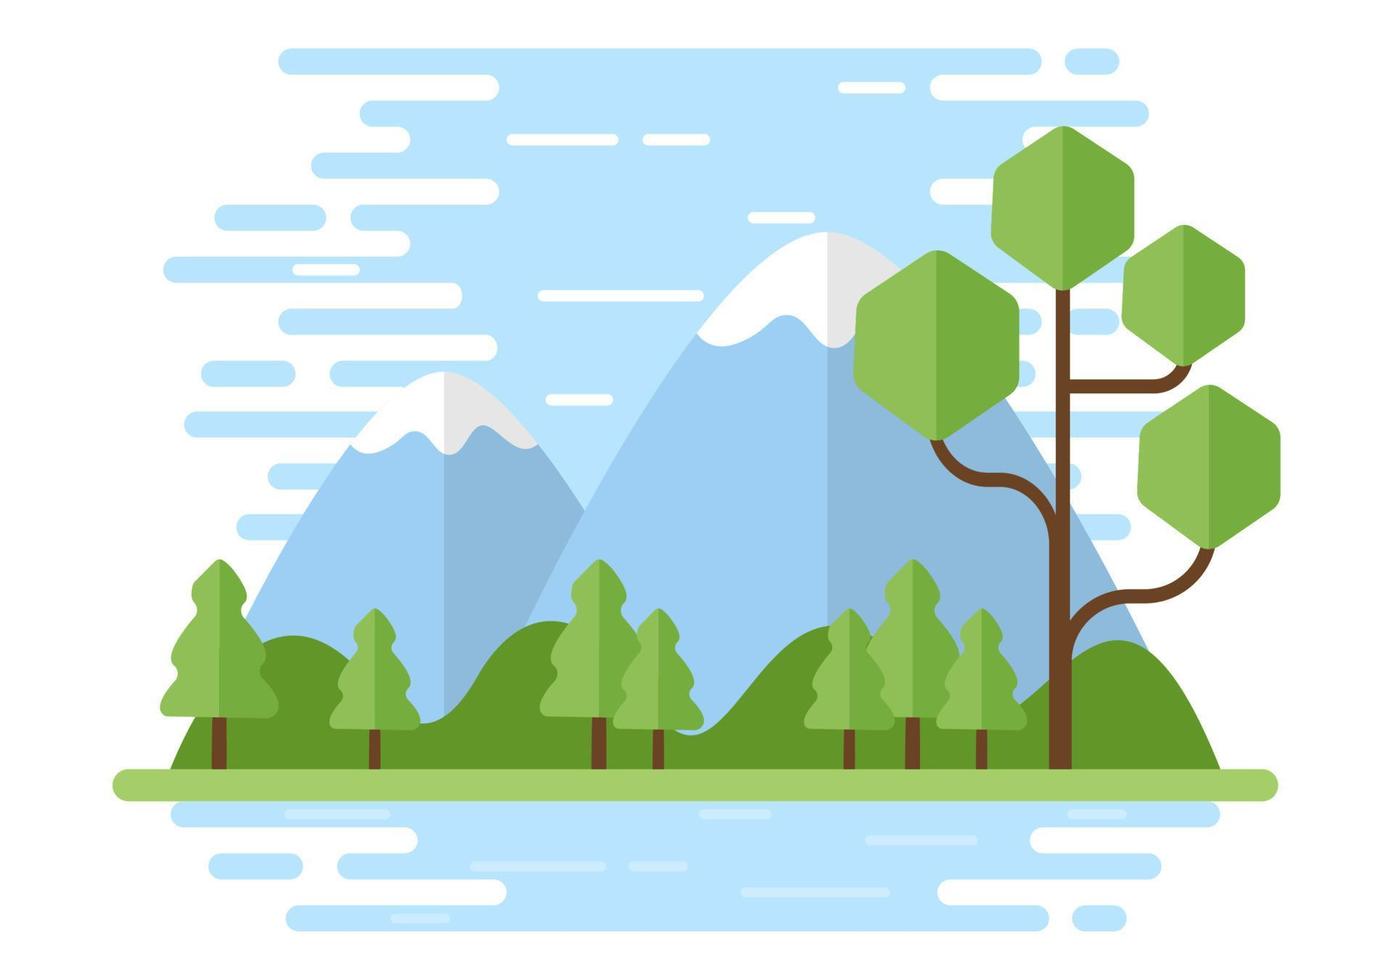 naturaleza y paisaje únicos de árboles, bosques, montañas, flores o plantas en primavera y verano de fondo en diferentes formas abstractas ilustración de estilo plano vector